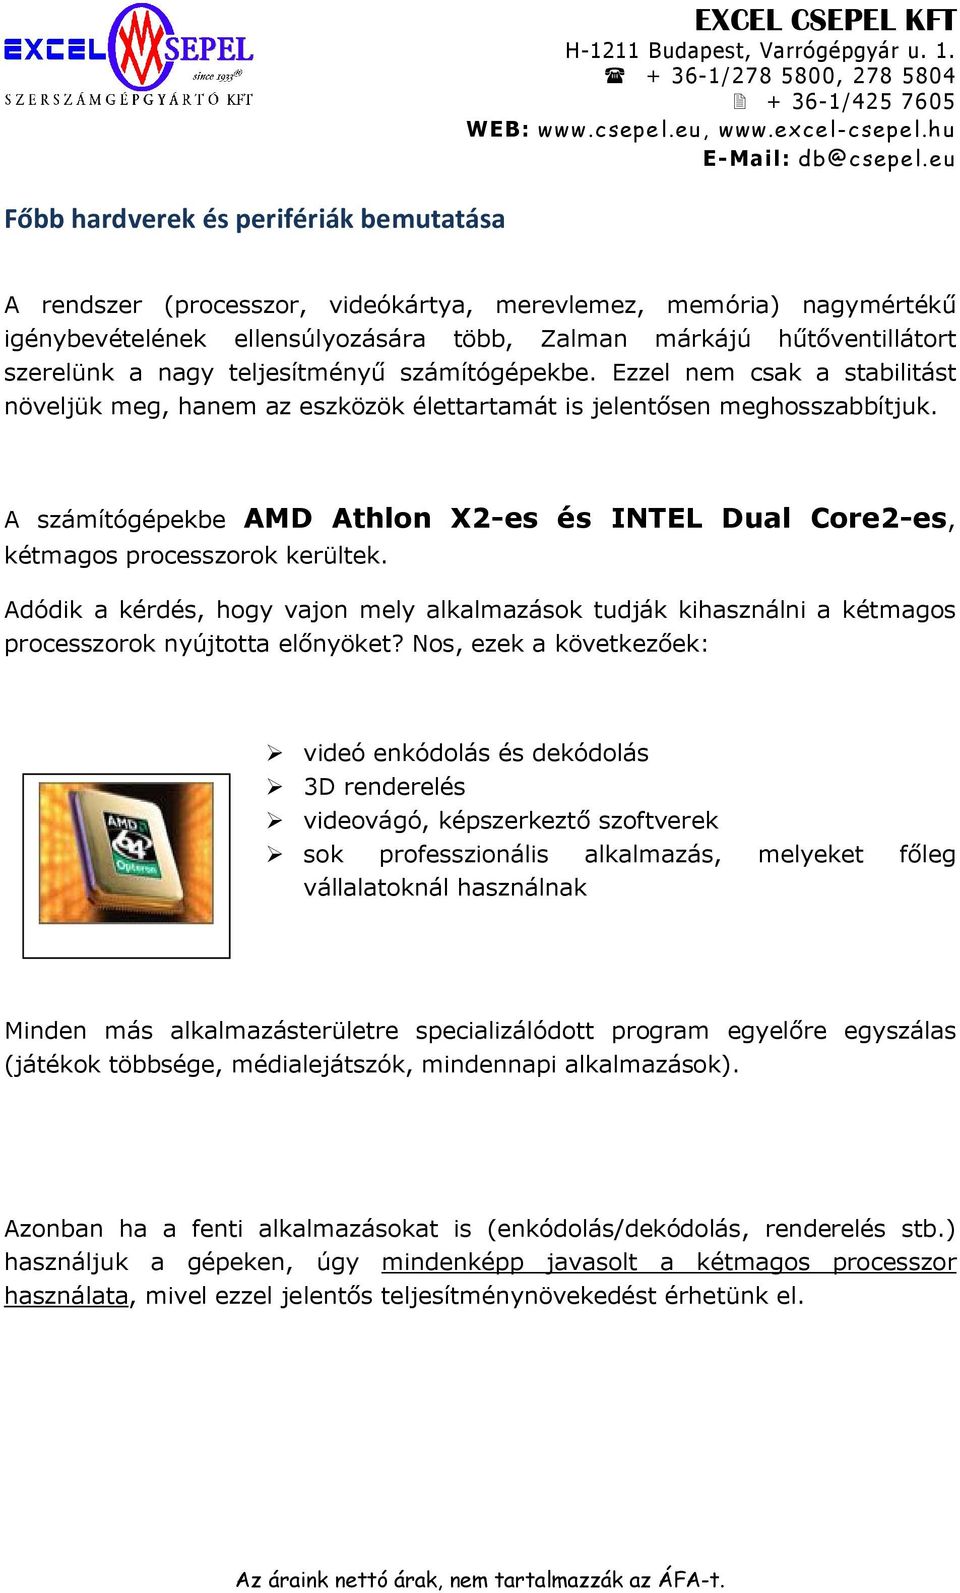 A számítógépekbe AMD Athlon X2-es és INTEL Dual Core2-es, kétmagos processzorok kerültek. Adódik a kérdés, hogy vajon mely alkalmazások tudják kihasználni a kétmagos processzorok nyújtotta előnyöket?